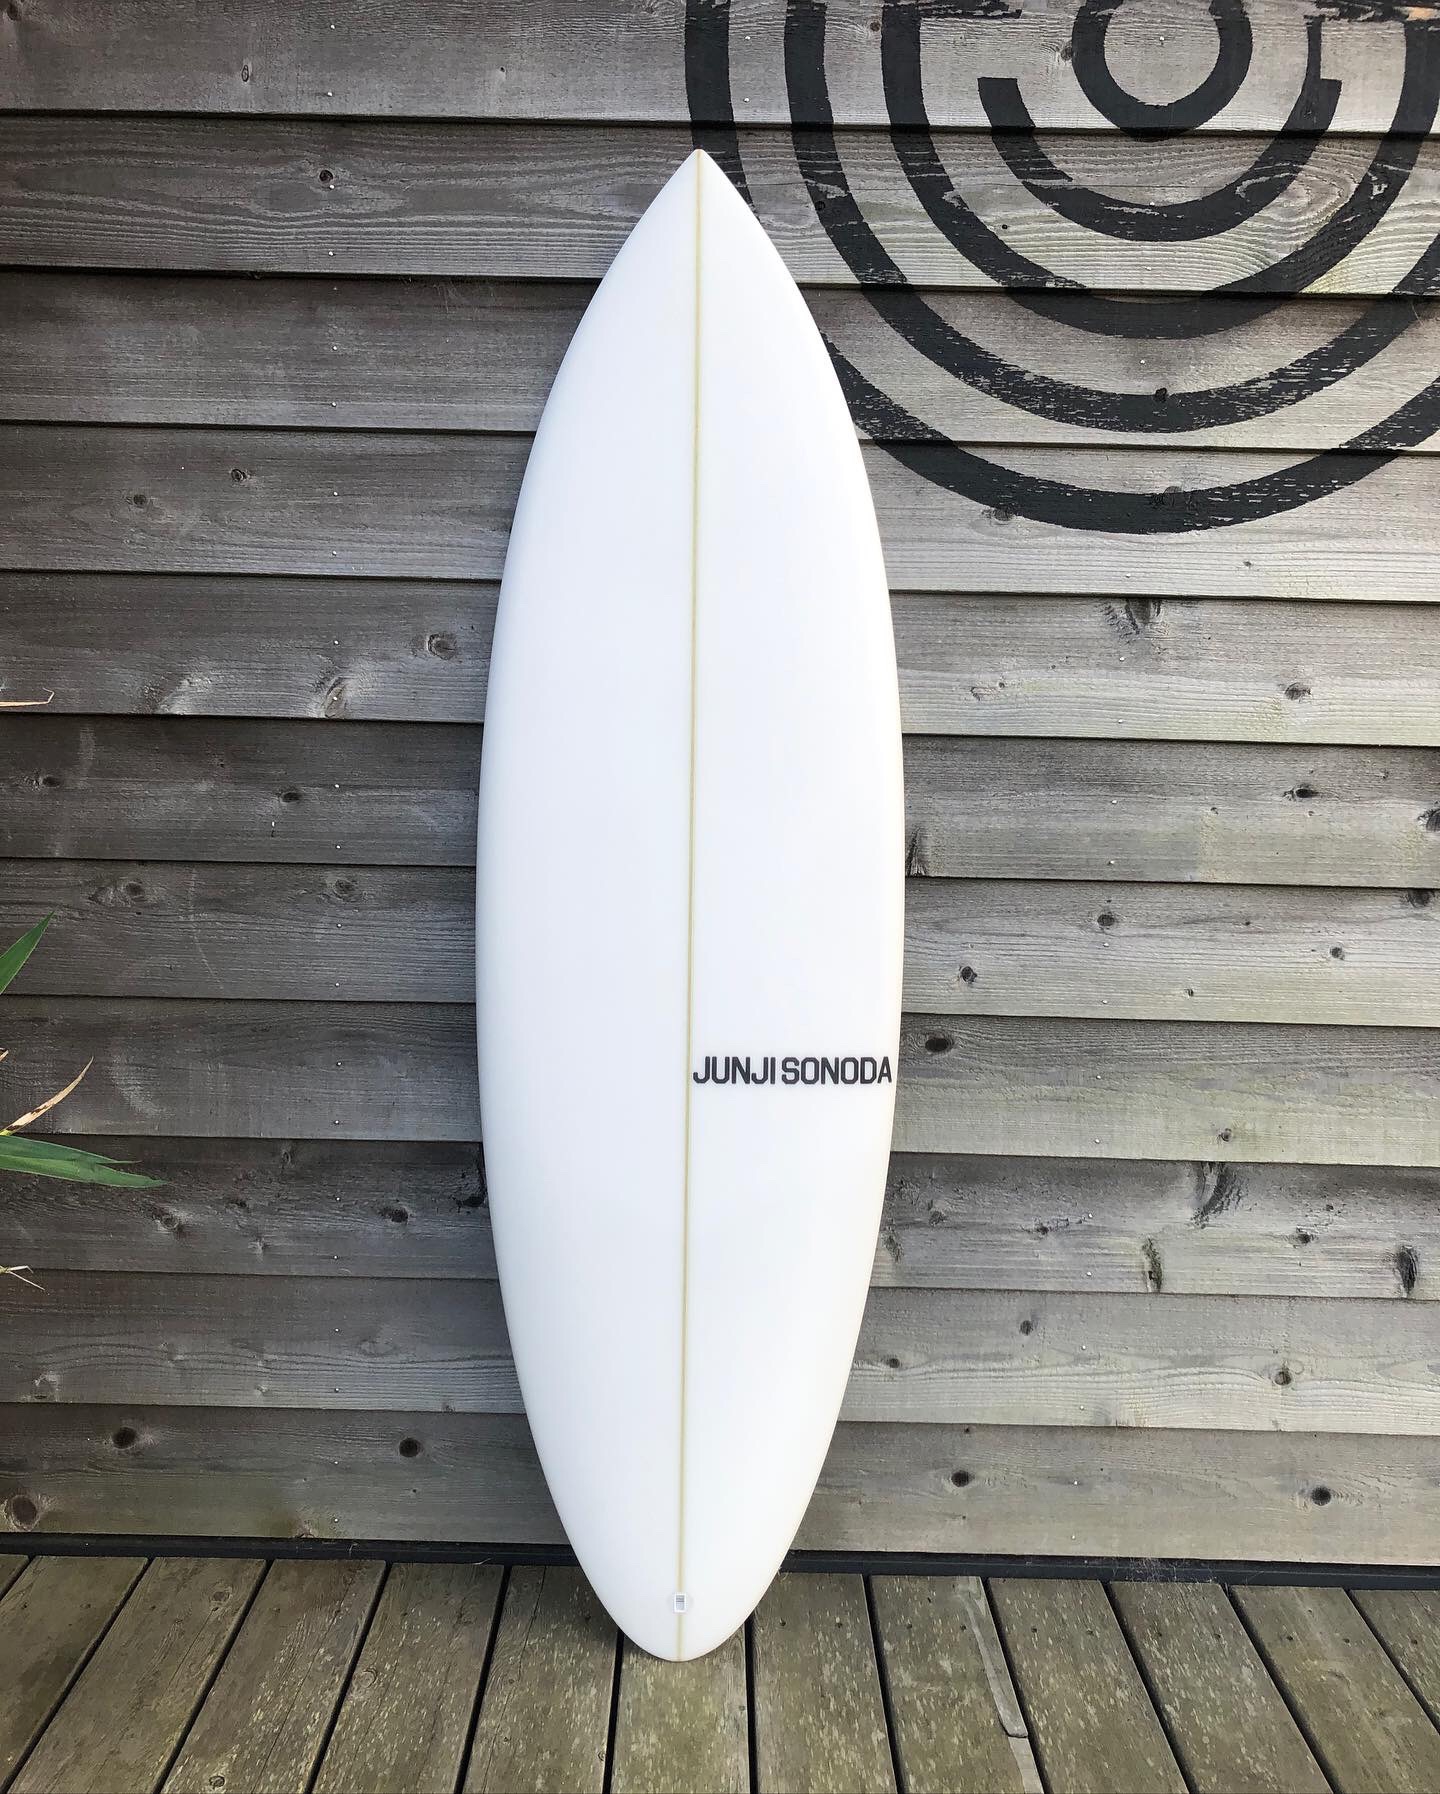 JUNJI SONODA SURFBOARD : ページ2 | STRAY☆SURF BLOG